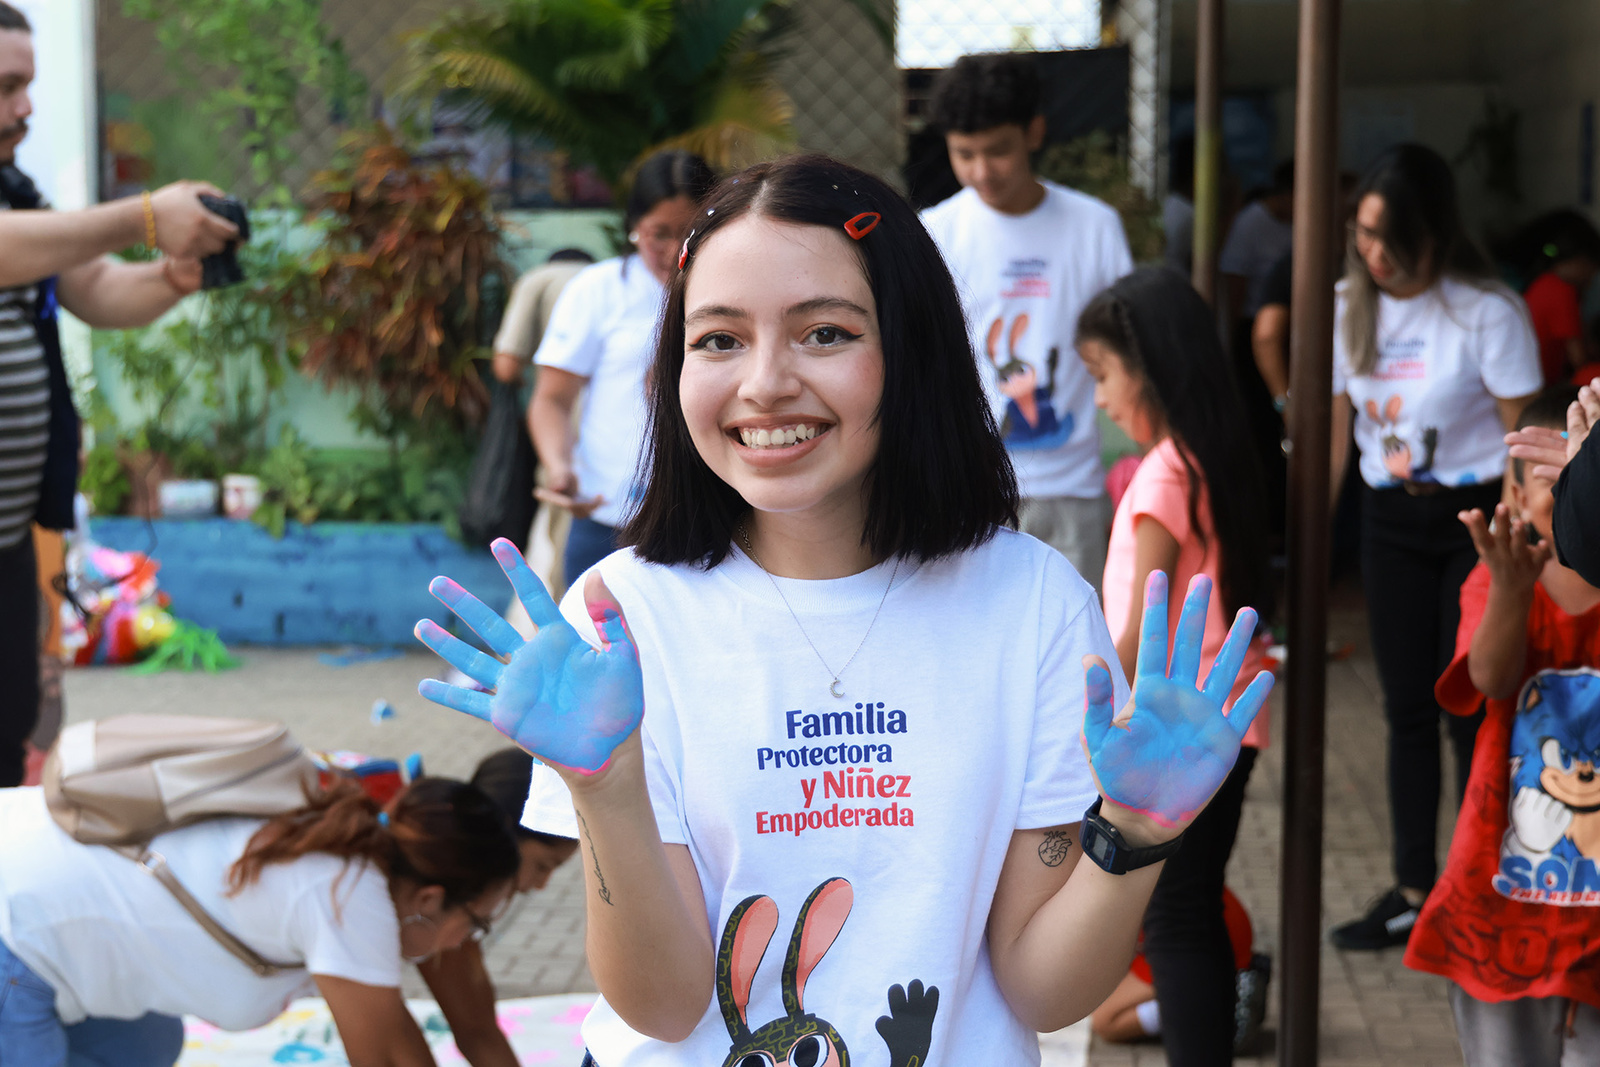 Una joven muestra sus manos con pintura azul luego de una actividad lúdica.